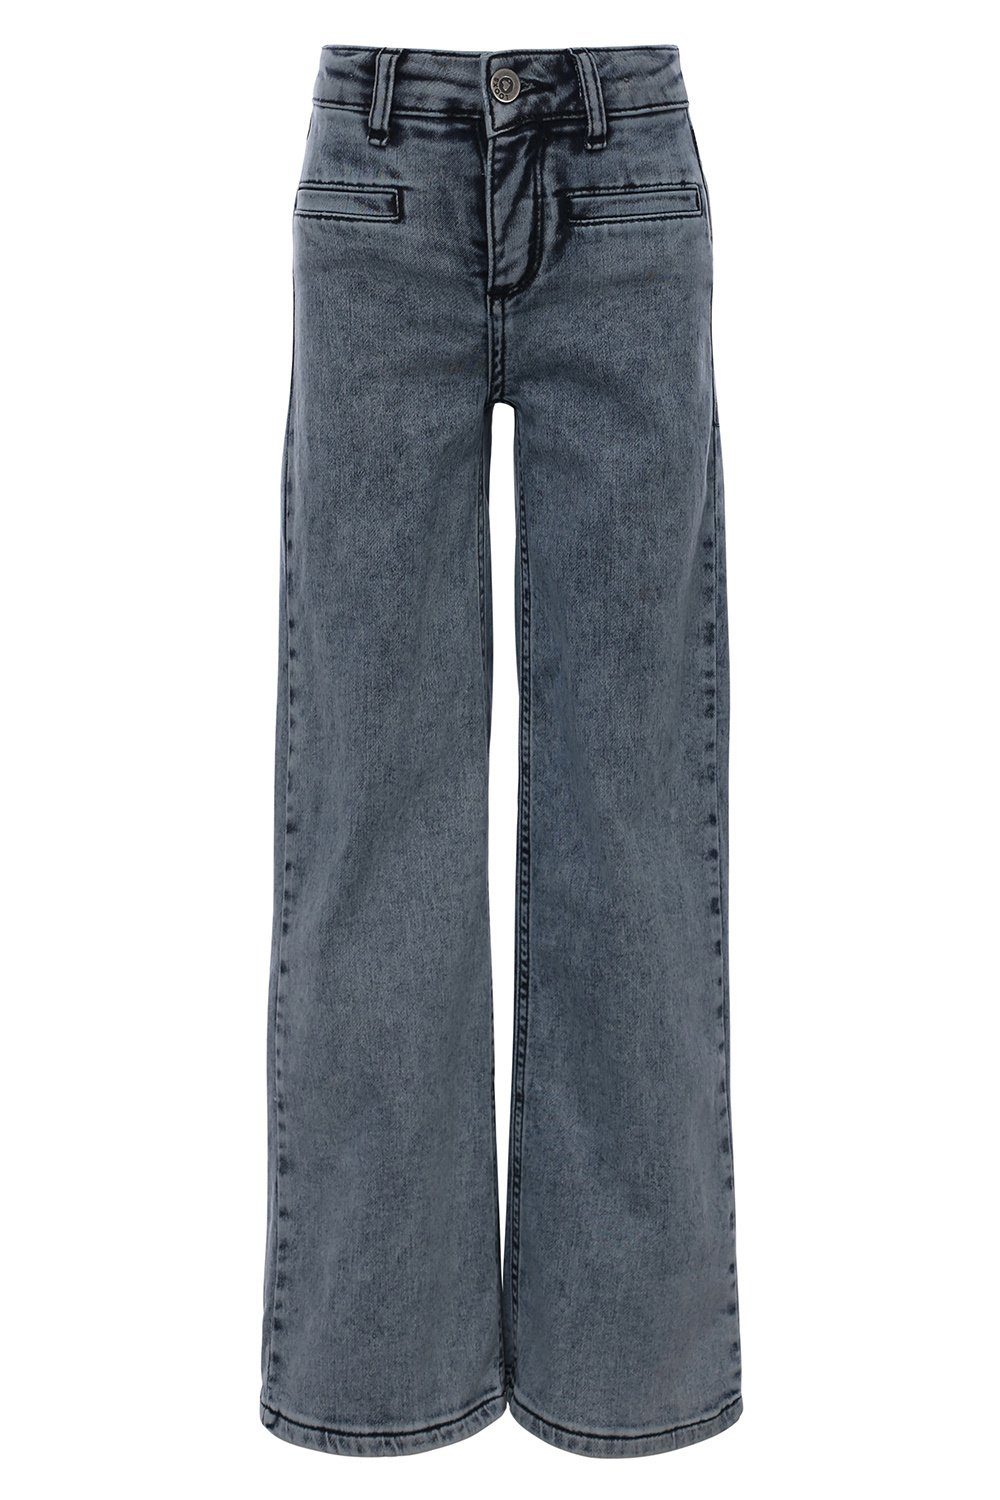 Looxs Revolution 2311-5624-165 Meisjes Broek - Maat 152 - Jeans Blauw van Katoen